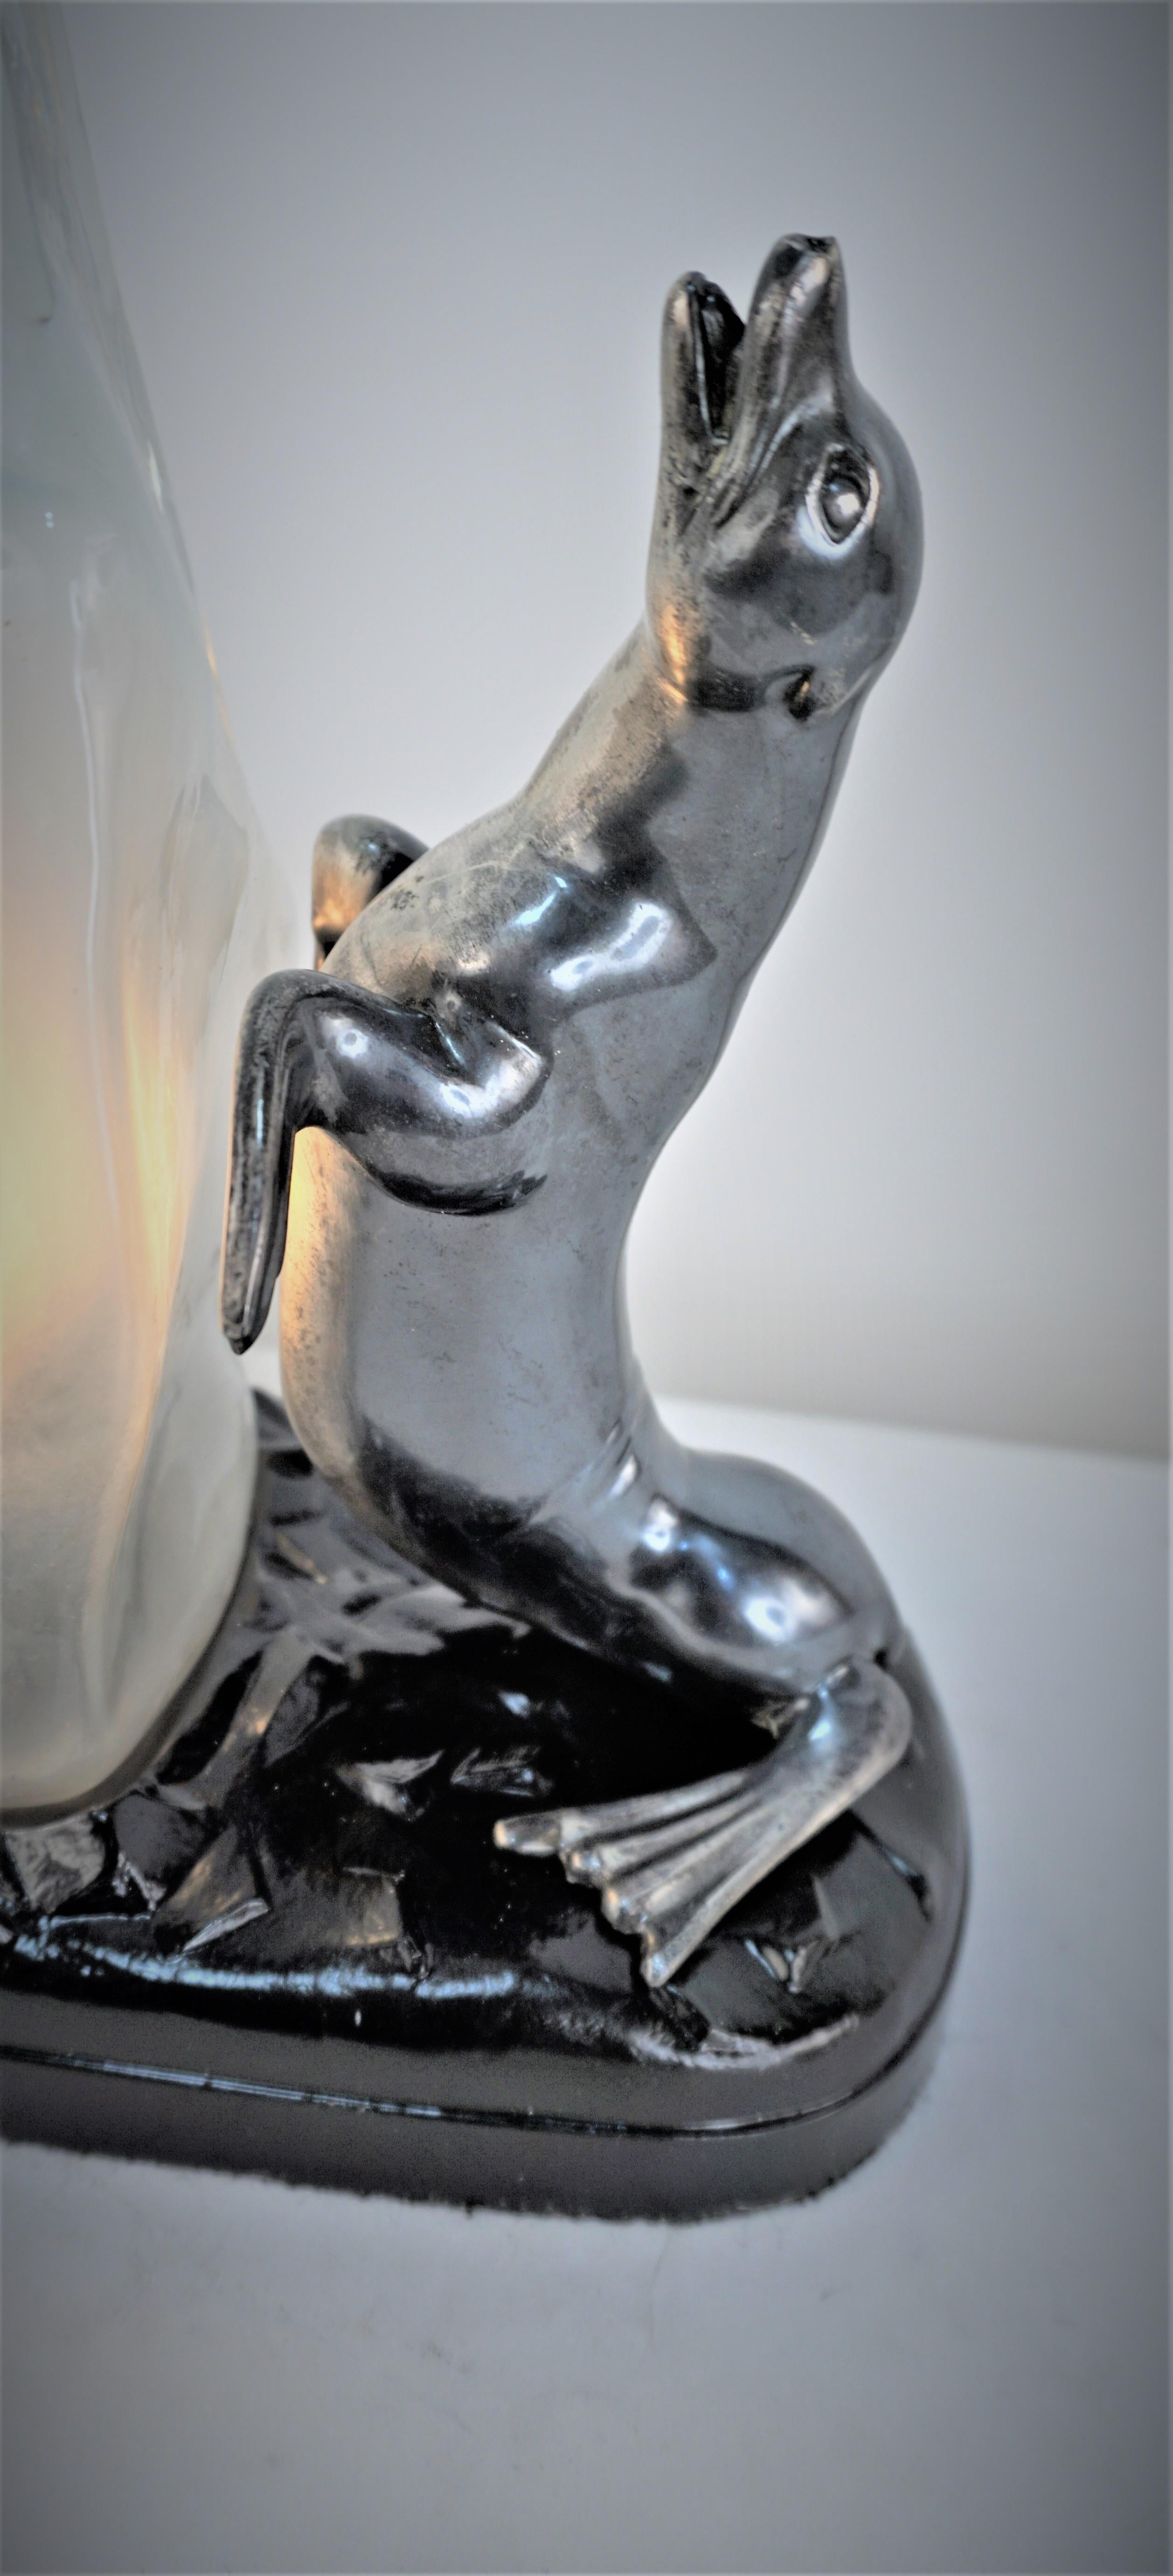 Lampe de table art déco des années 1930 en métal argenté oxydé et base laquée noire, verre moulé comme un grand morceau de glace.